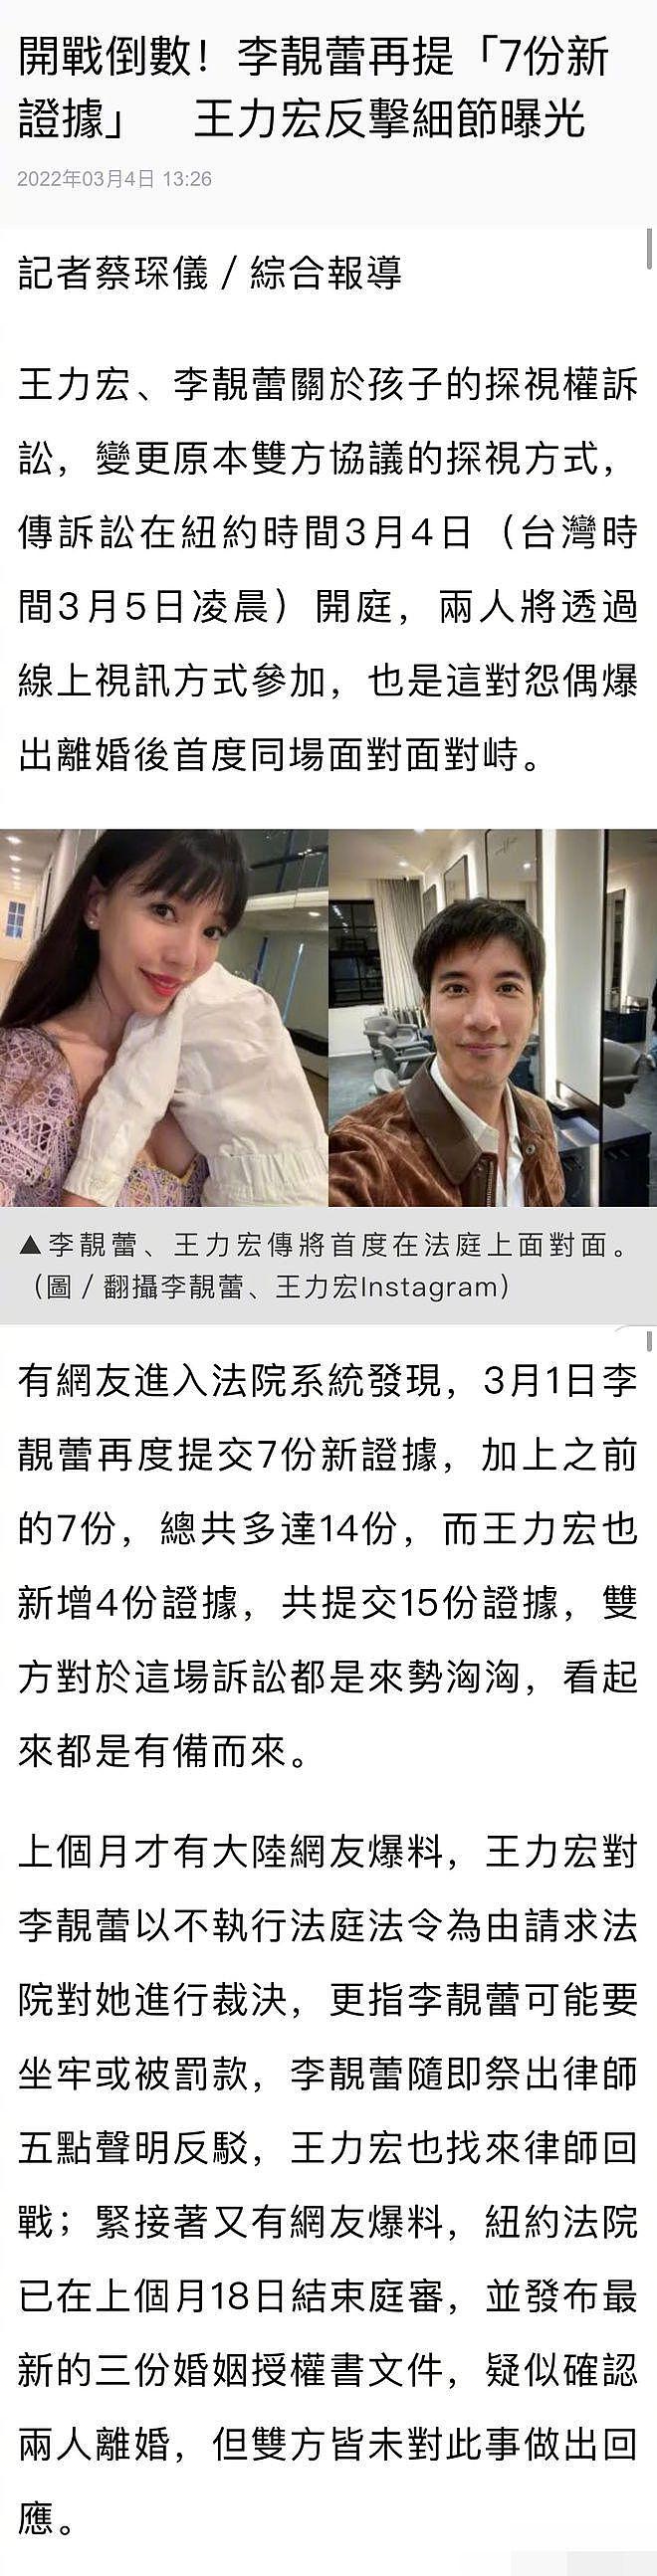 王力宏离婚官司明日开庭 李靓蕾新增 7 项证据对决 - 2